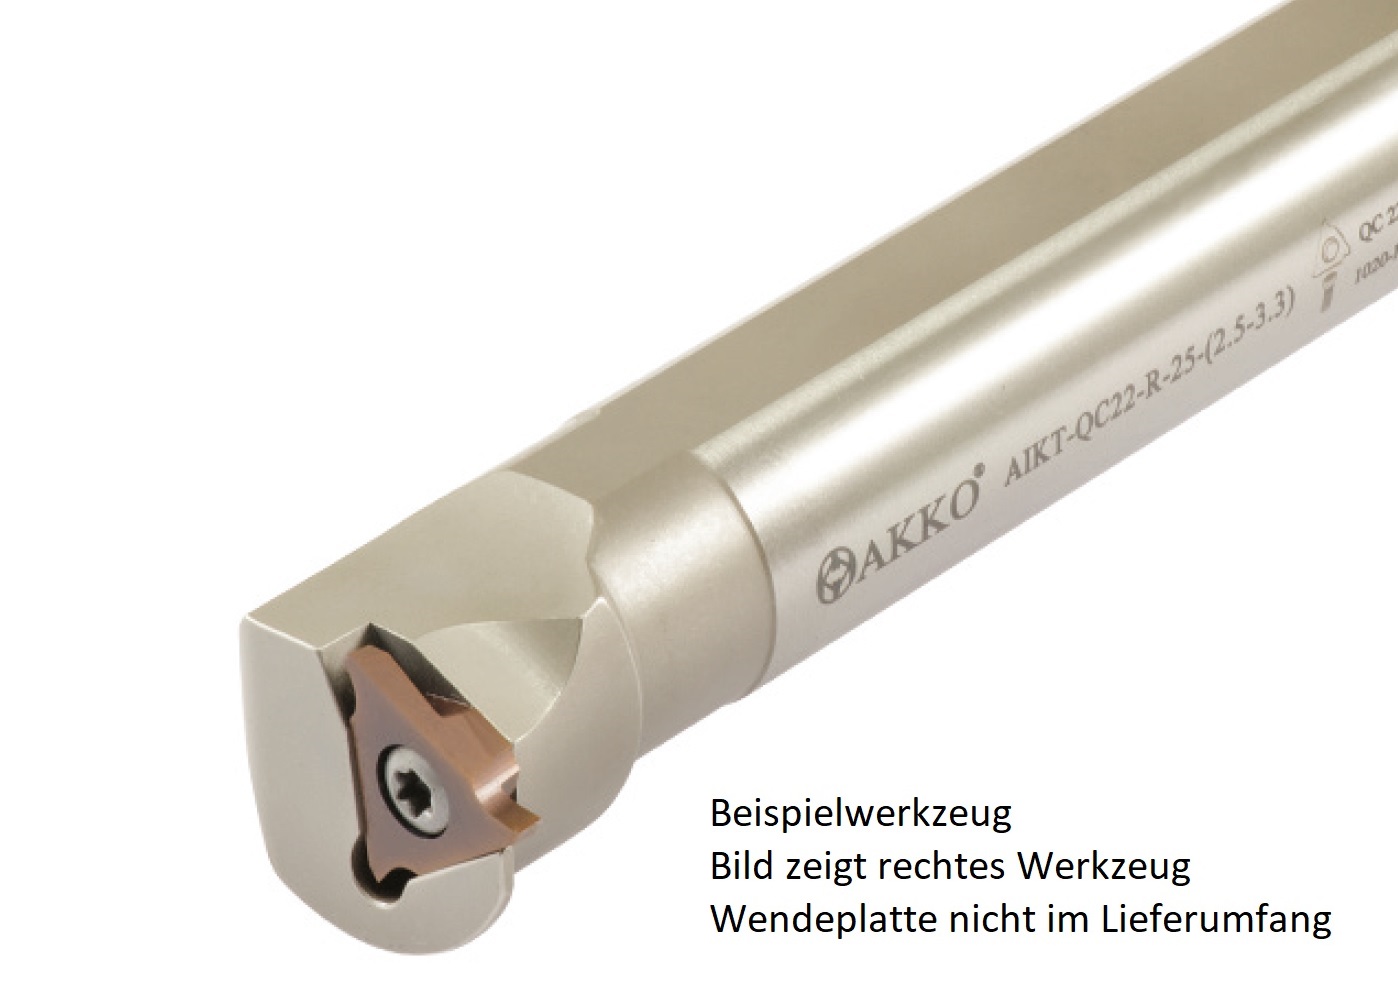 AKKO-Innen-Stechhalter, kompatibel mit ZCC-Stechplatte QC22L (1.00-2.30)
Schaft-ø 25, ohne Innenkühlung, links